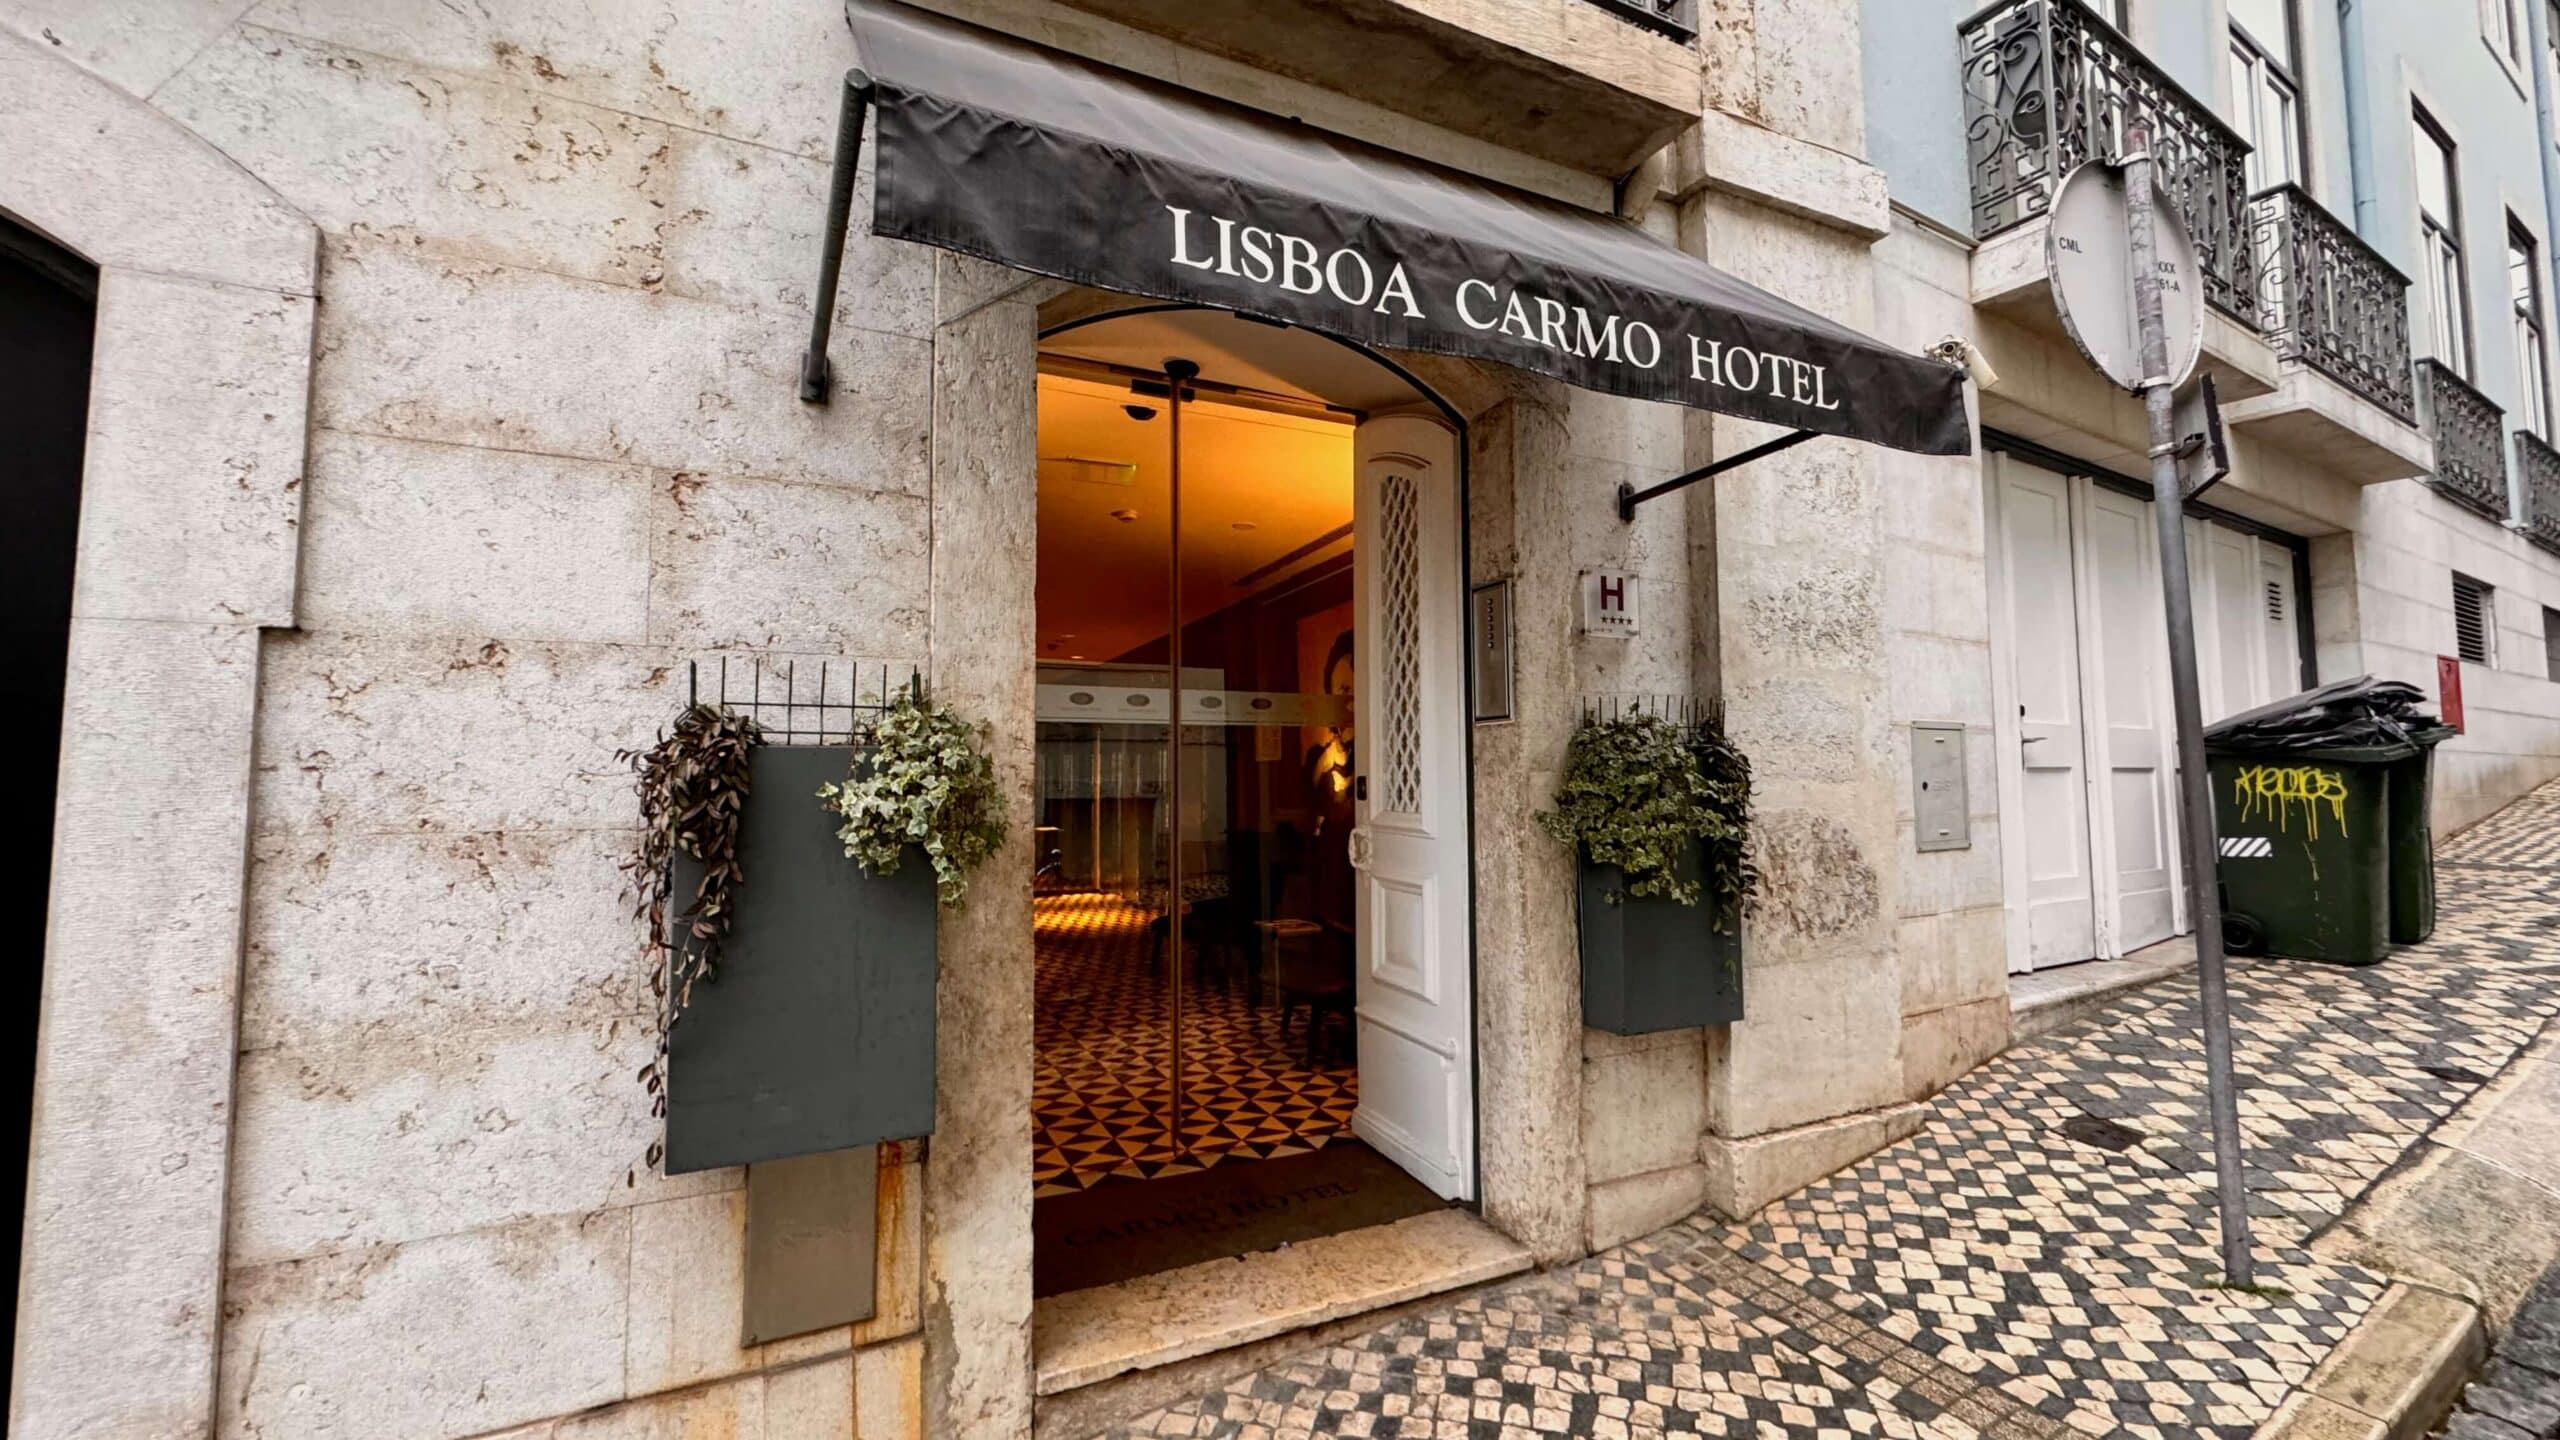 Lisboa Carmo Hotel Review: Exterior View